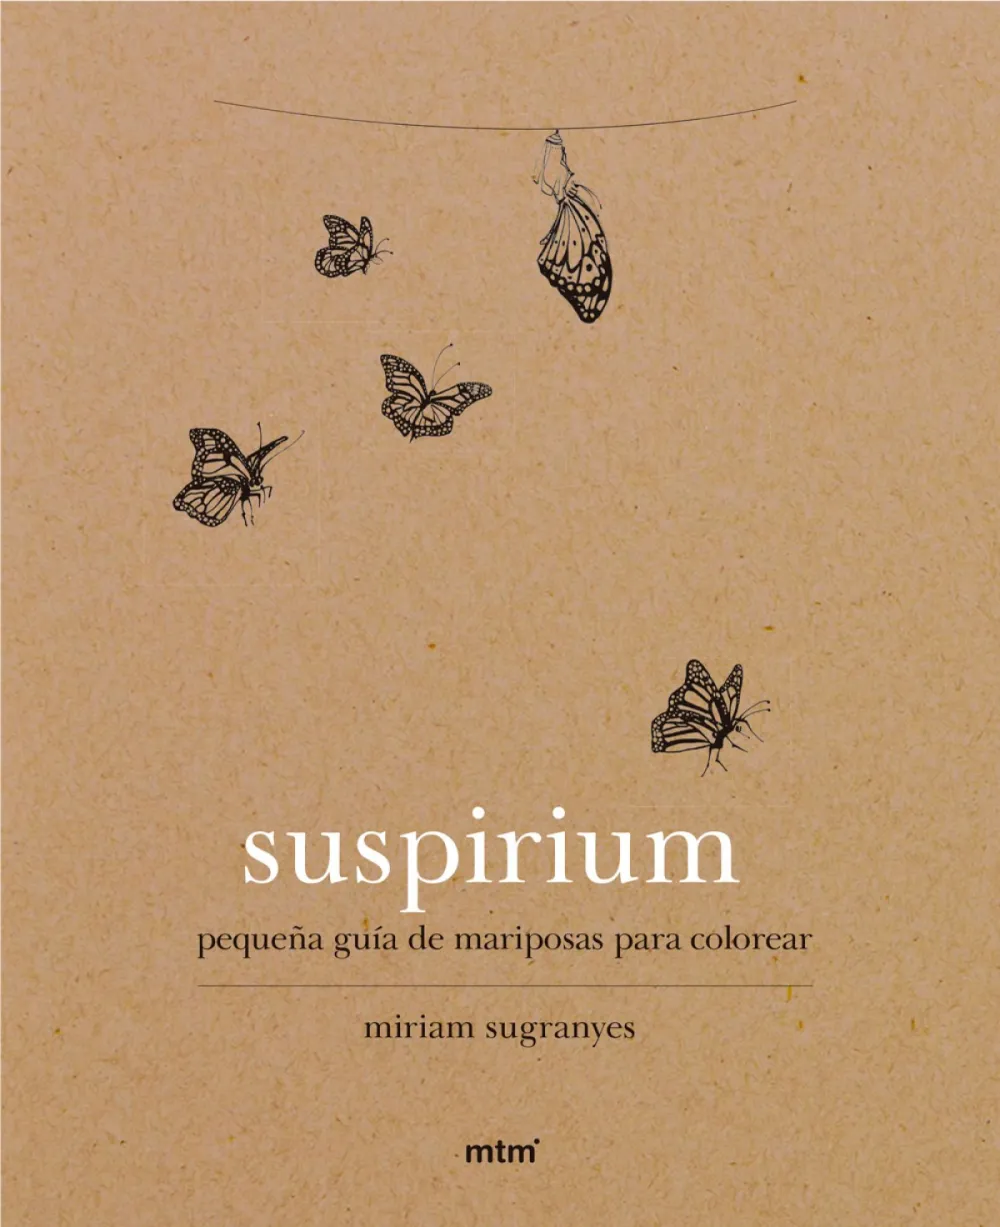 Suspirium. Pequeña guía de mariposas para colorear. Miriam Sugranyes.